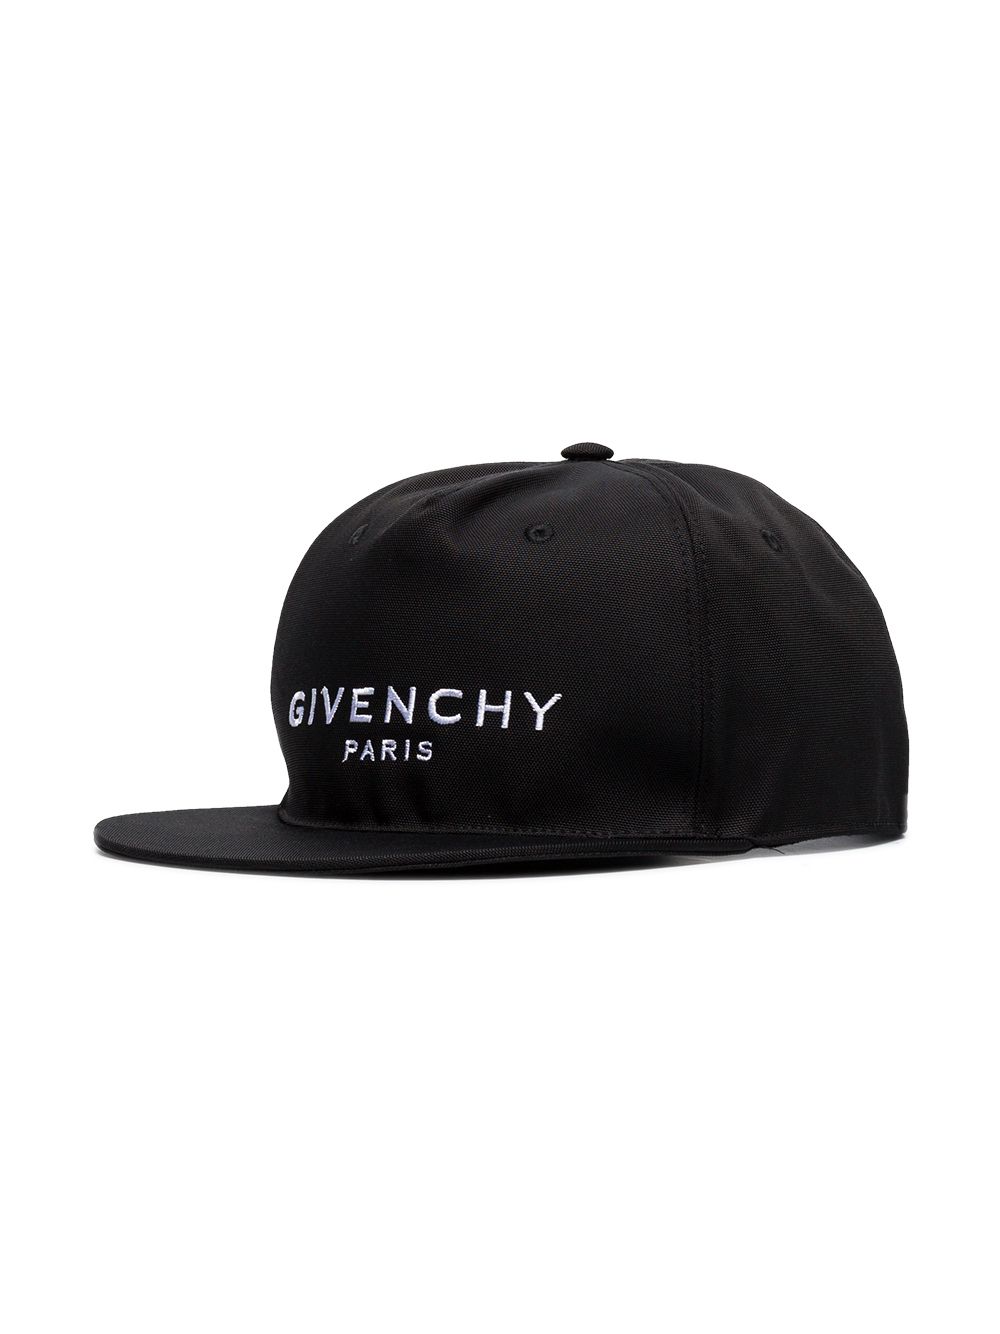 фото Givenchy бейсболка с вышитым логотипом